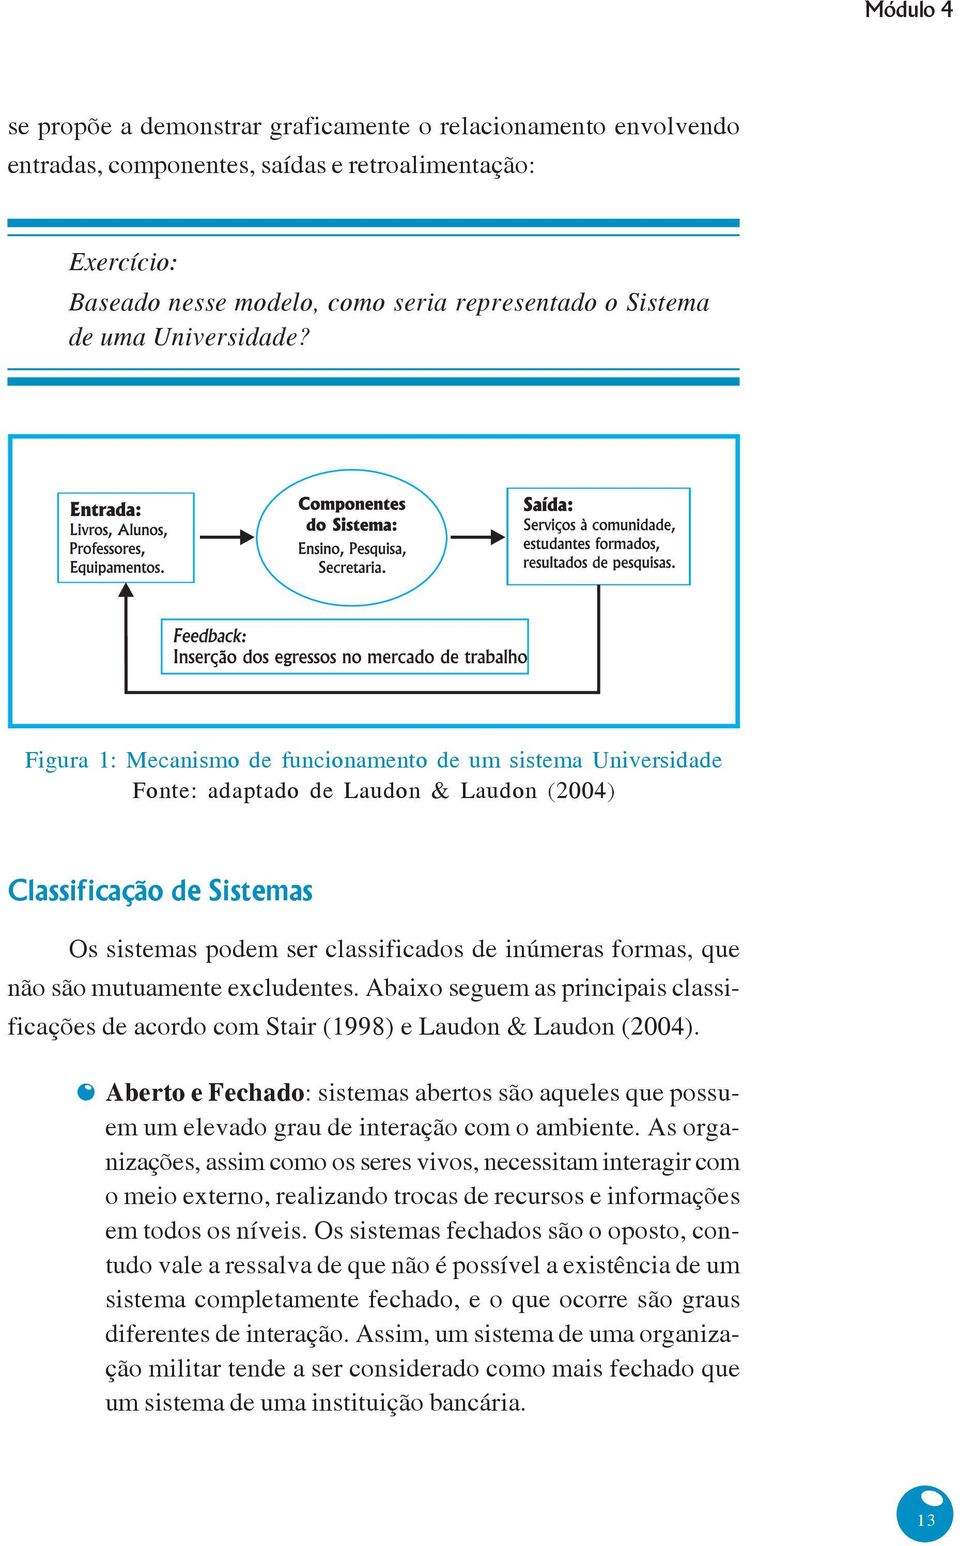 Figura 1: Mecanismo de funcionamento de um sistema Universidade Fonte: adaptado de Laudon & Laudon (2004) Classificação de Sistemas Os sistemas podem ser classificados de inúmeras formas, que não são